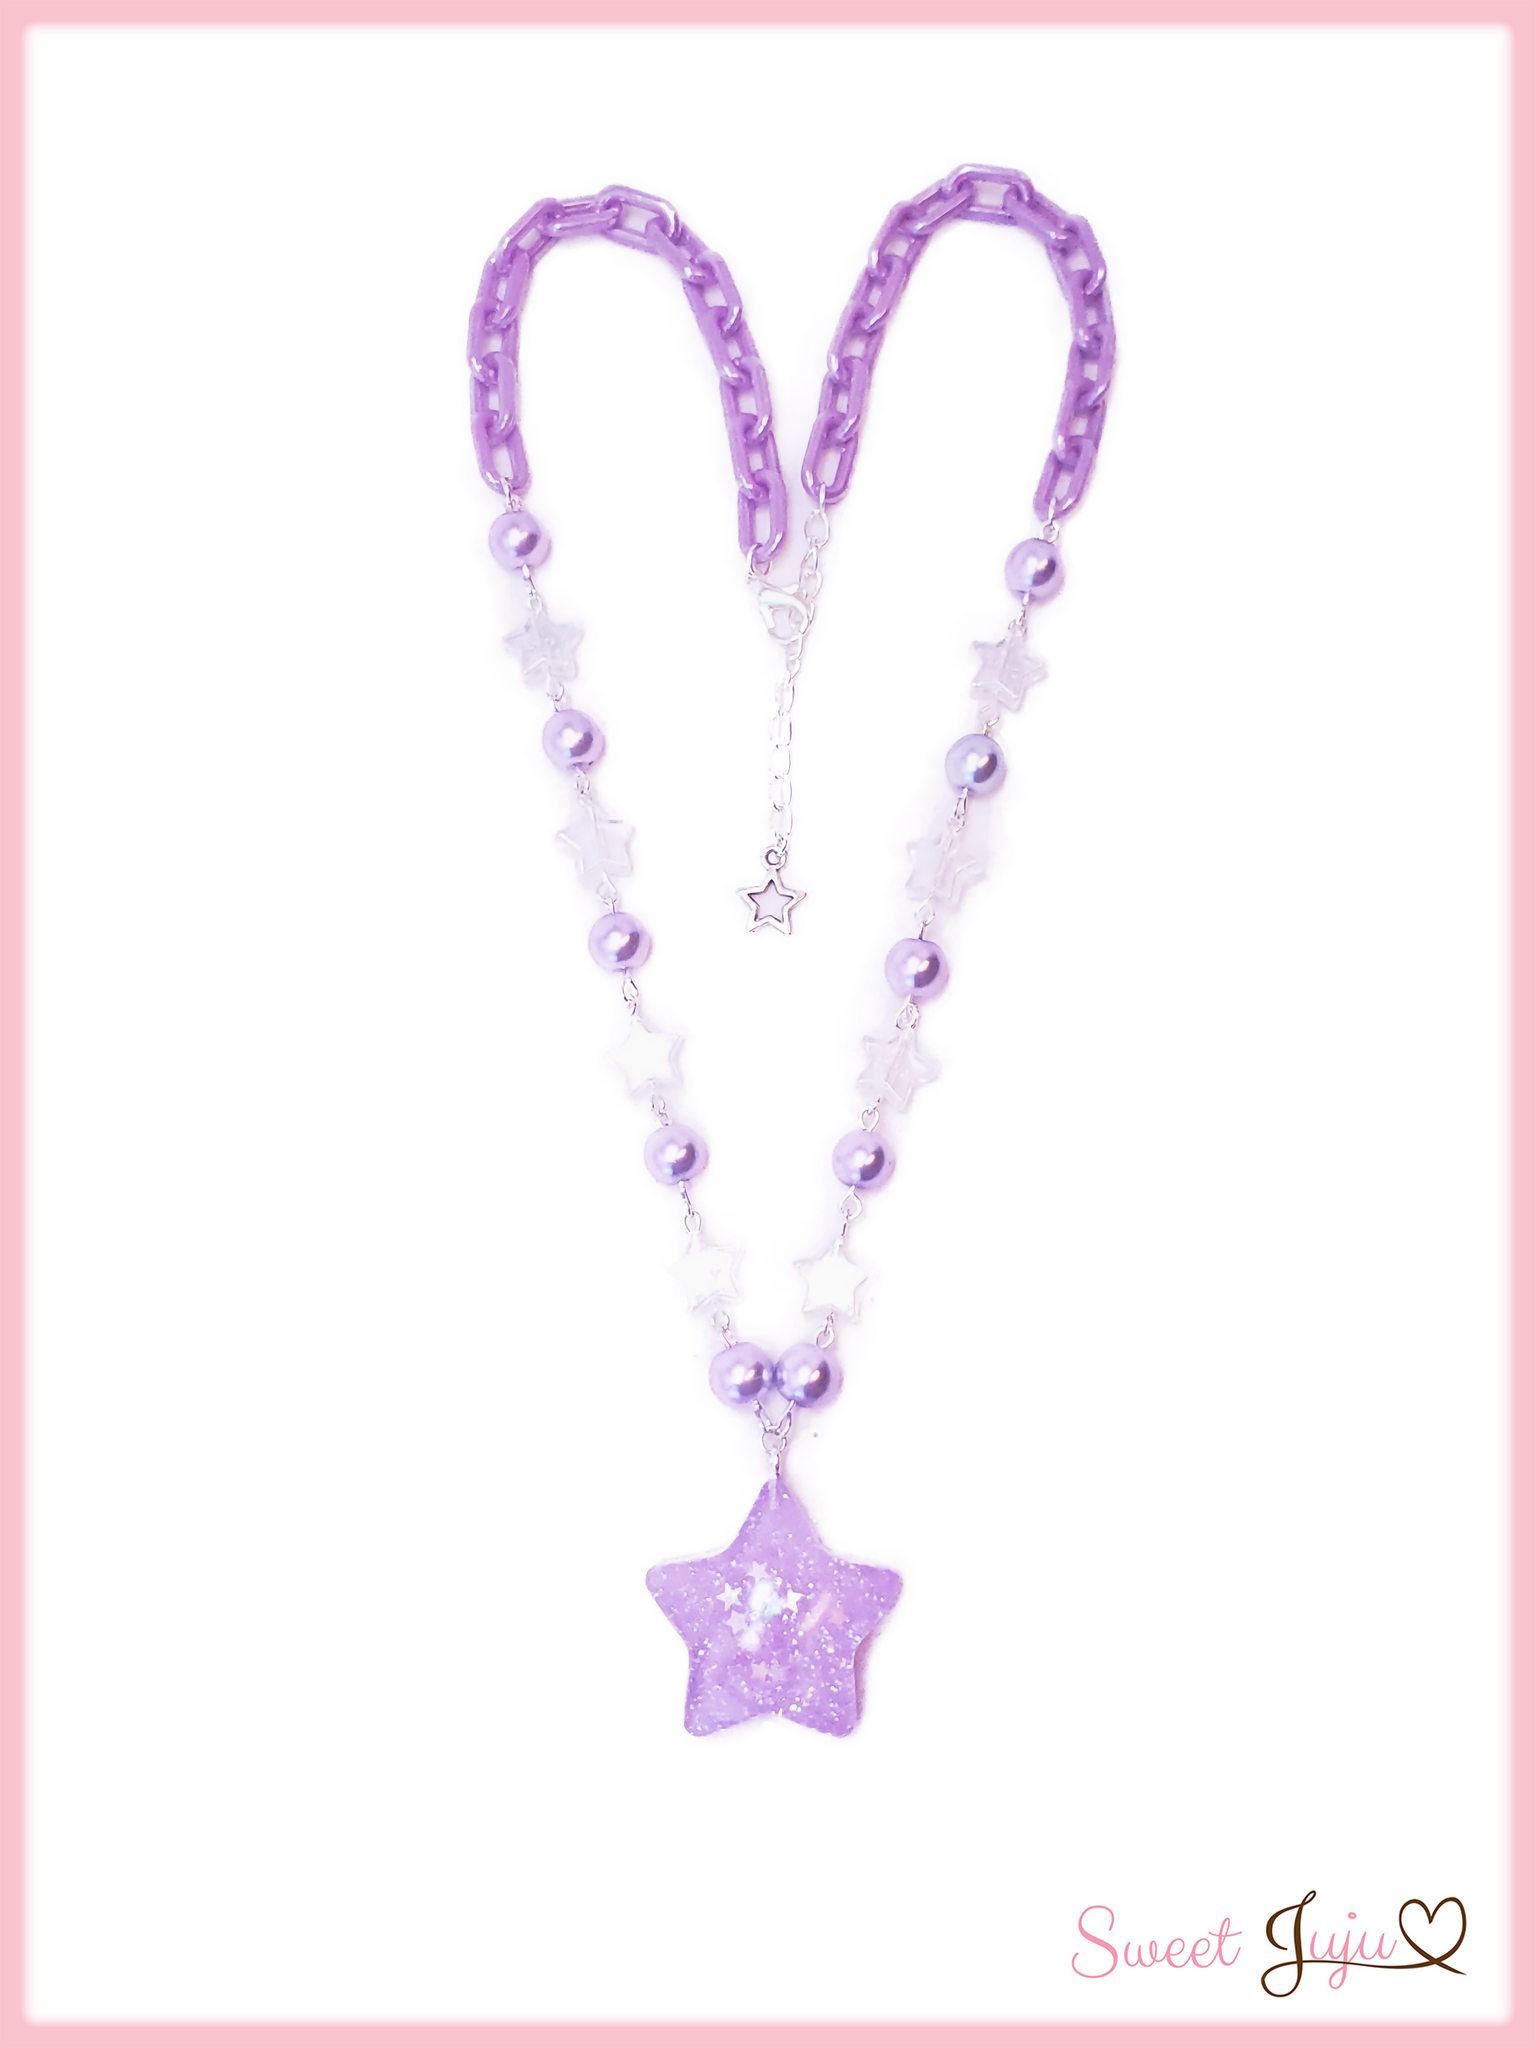 Confetti Star Necklace